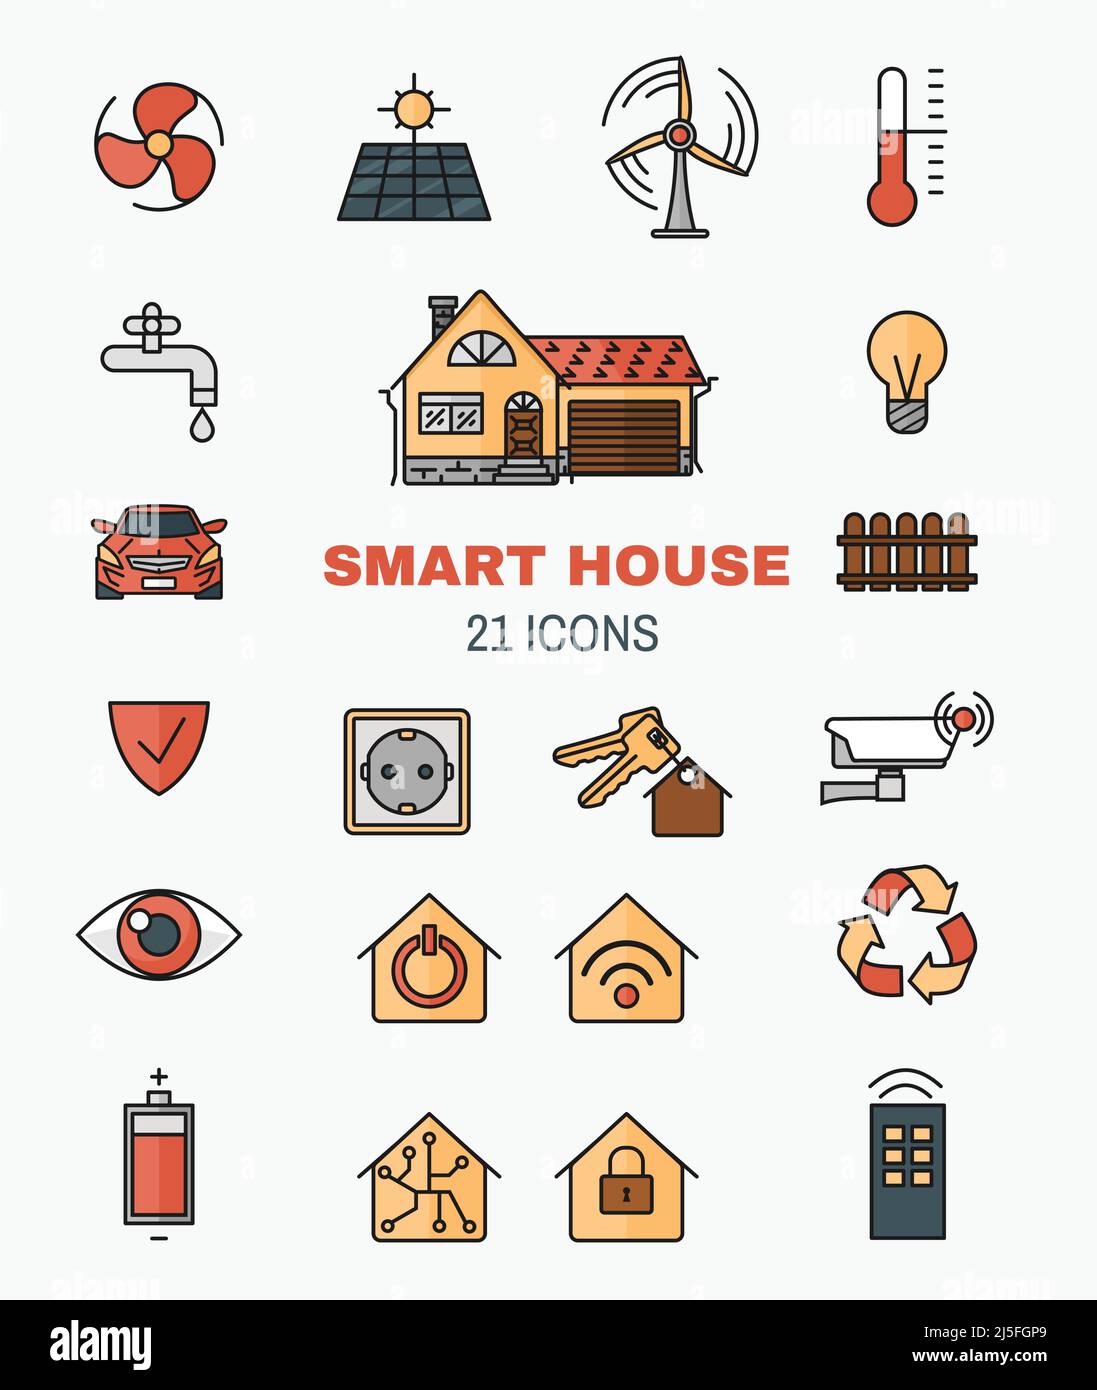 Stellen Sie Vektorlinien-Art-Symbole des Smart Home, Steuerung über Internet-Home-Arbeitsgeräte. Das Konzept von Komfort und Sicherheit eines Smart Home. Stock Vektor